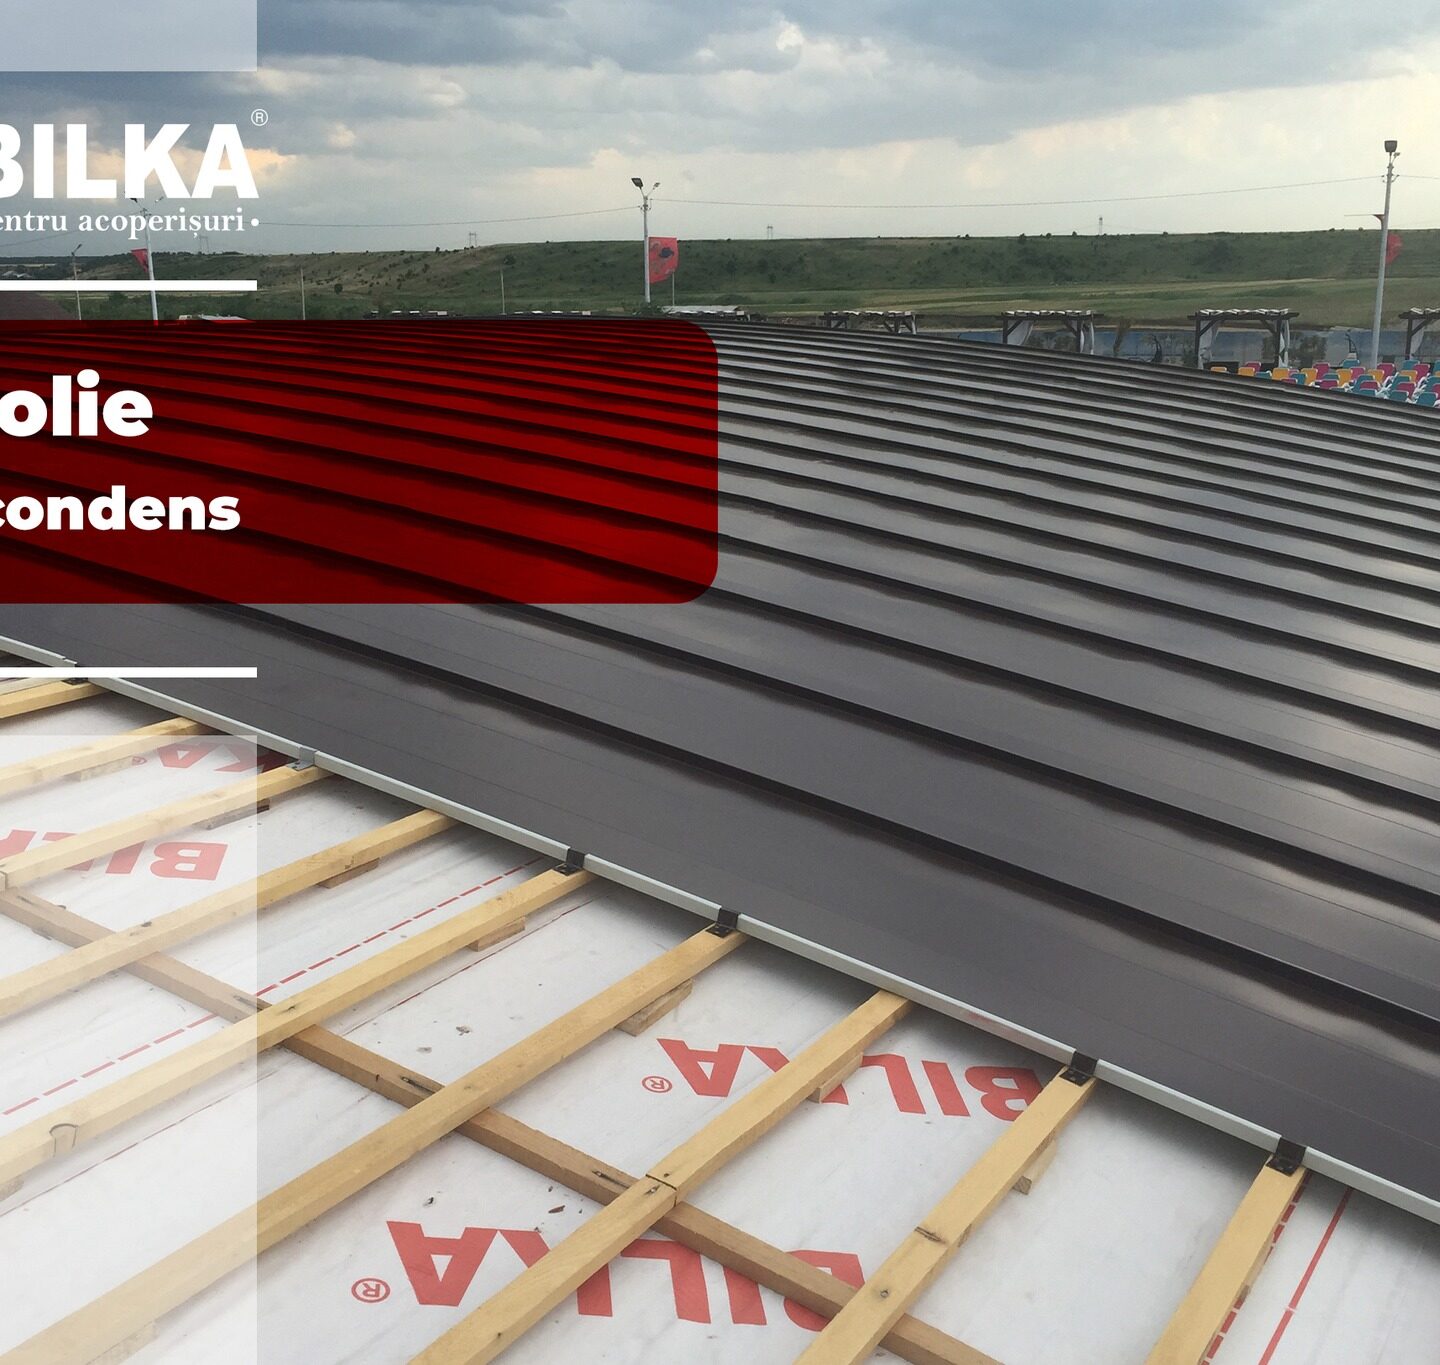 Folie anticondens pentru acoperișuri: Cum să îți protejezi clădirea de umezeală